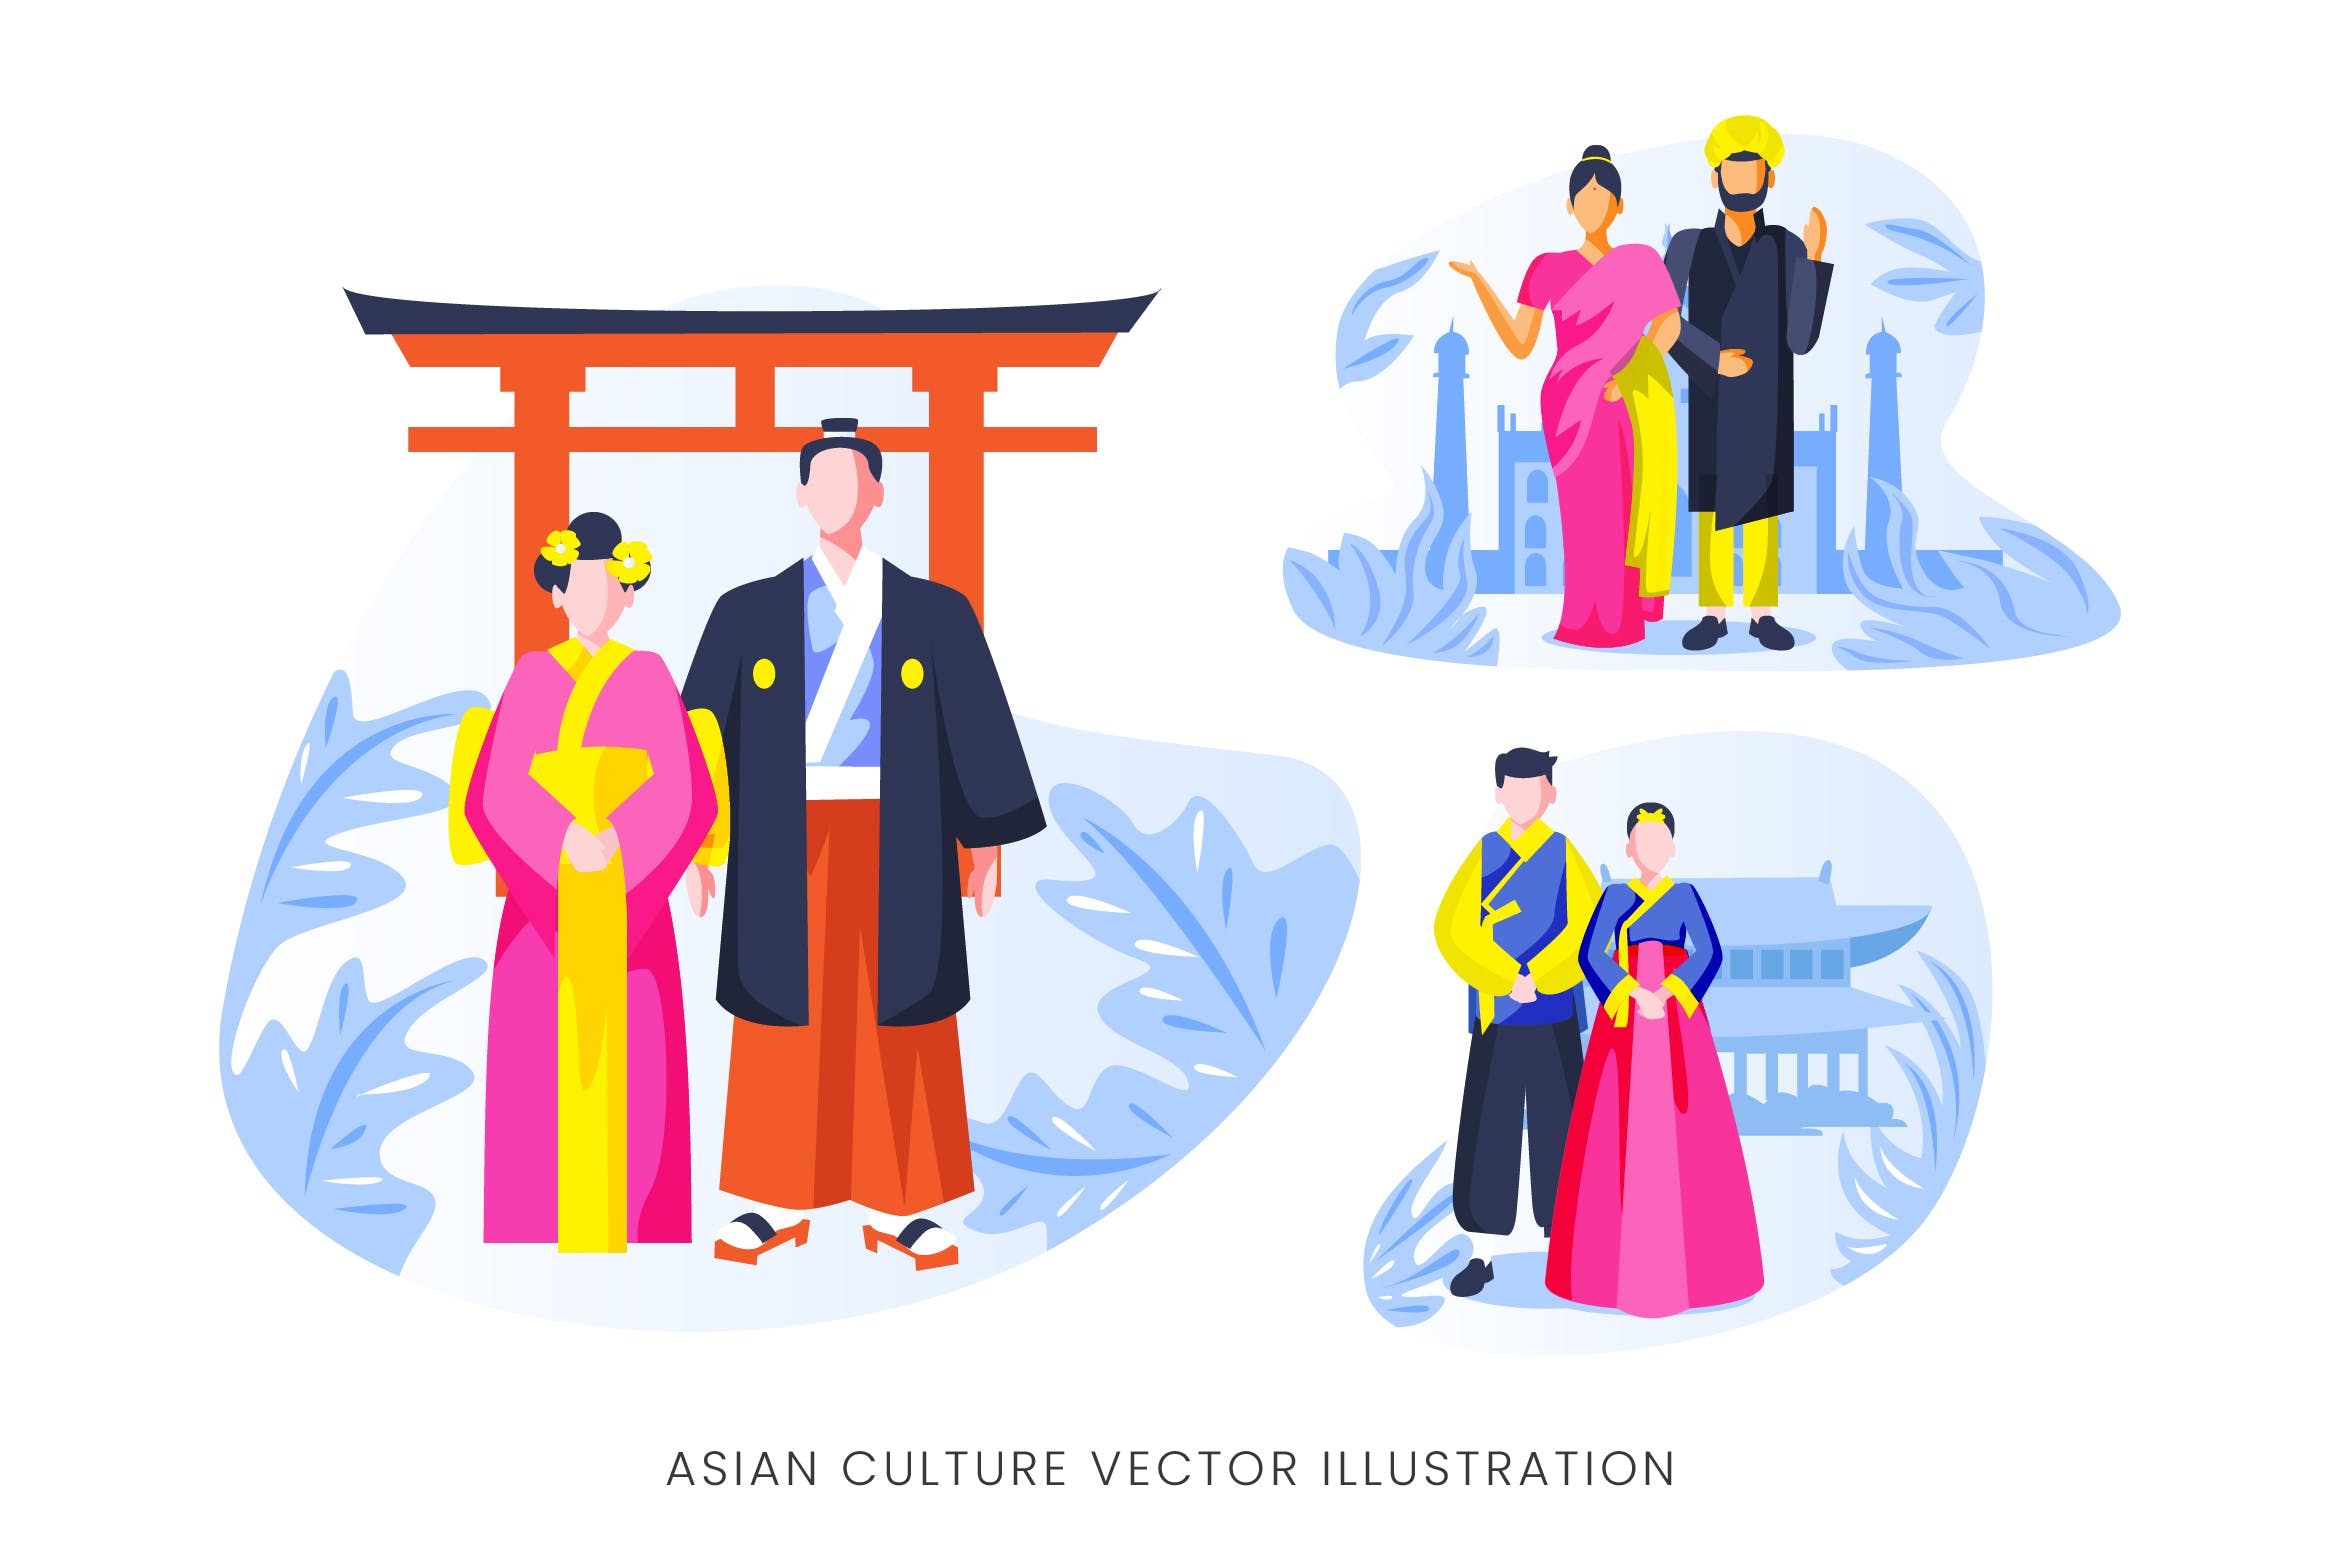 亚洲文化人物形象素材中国精选手绘插画矢量素材 Asian Culture Vector Character Set插图